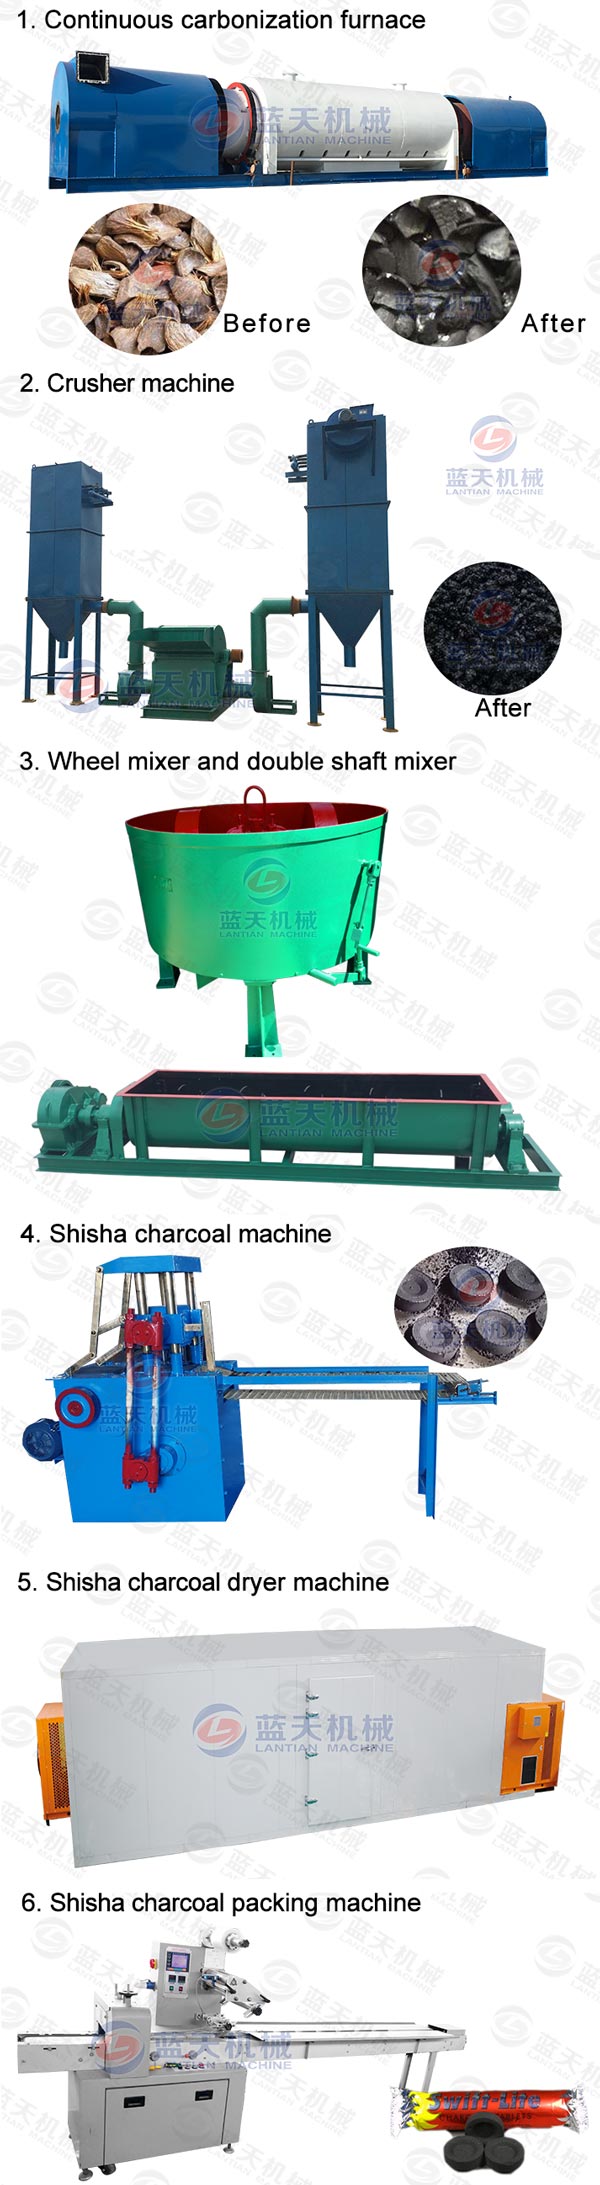 coconut shisha charcoal machine